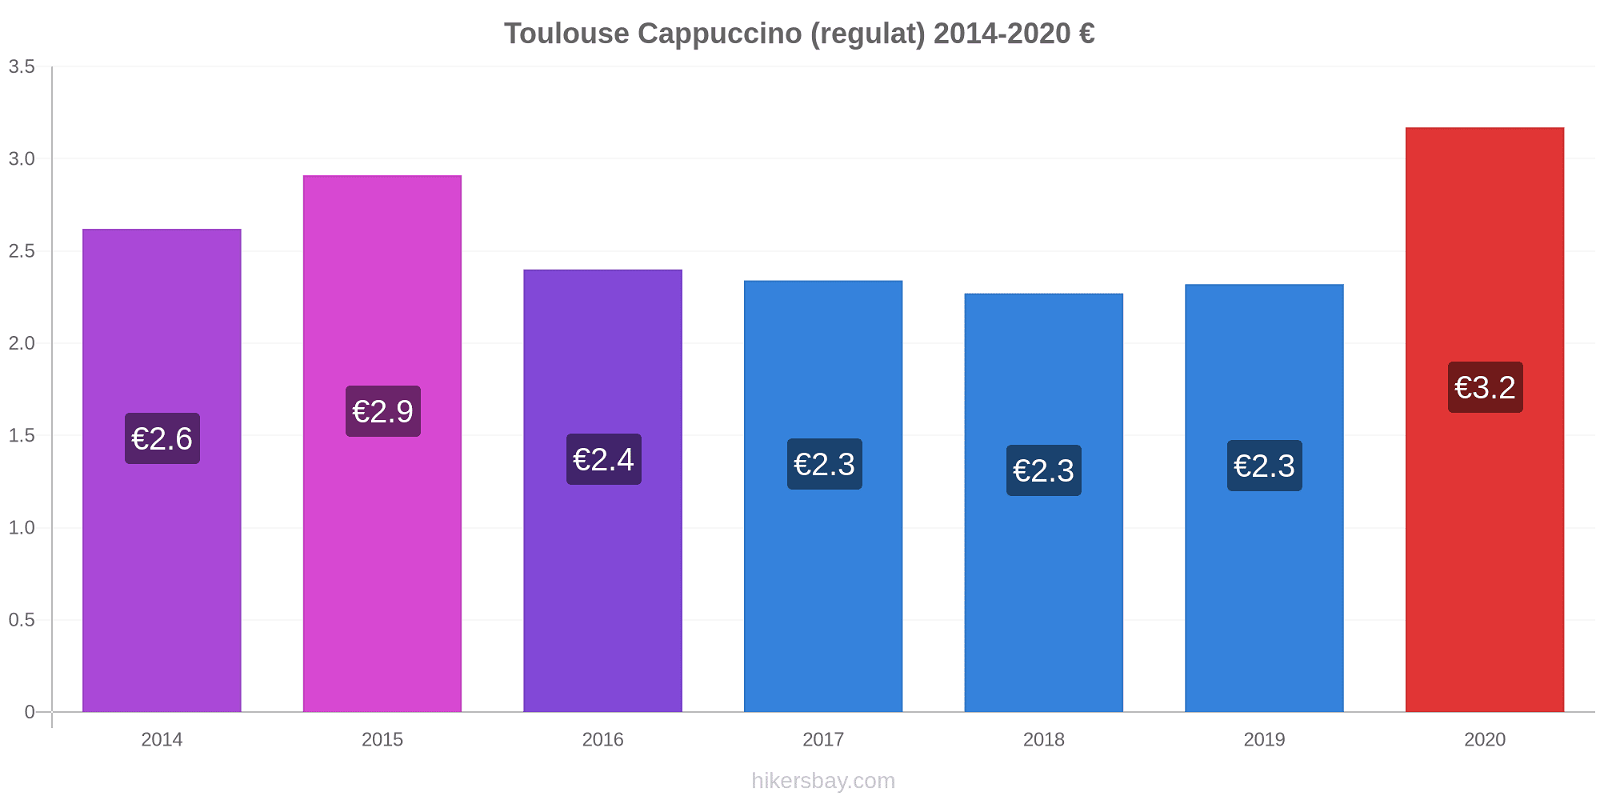 Toulouse modificări de preț Cappuccino (regulat) hikersbay.com